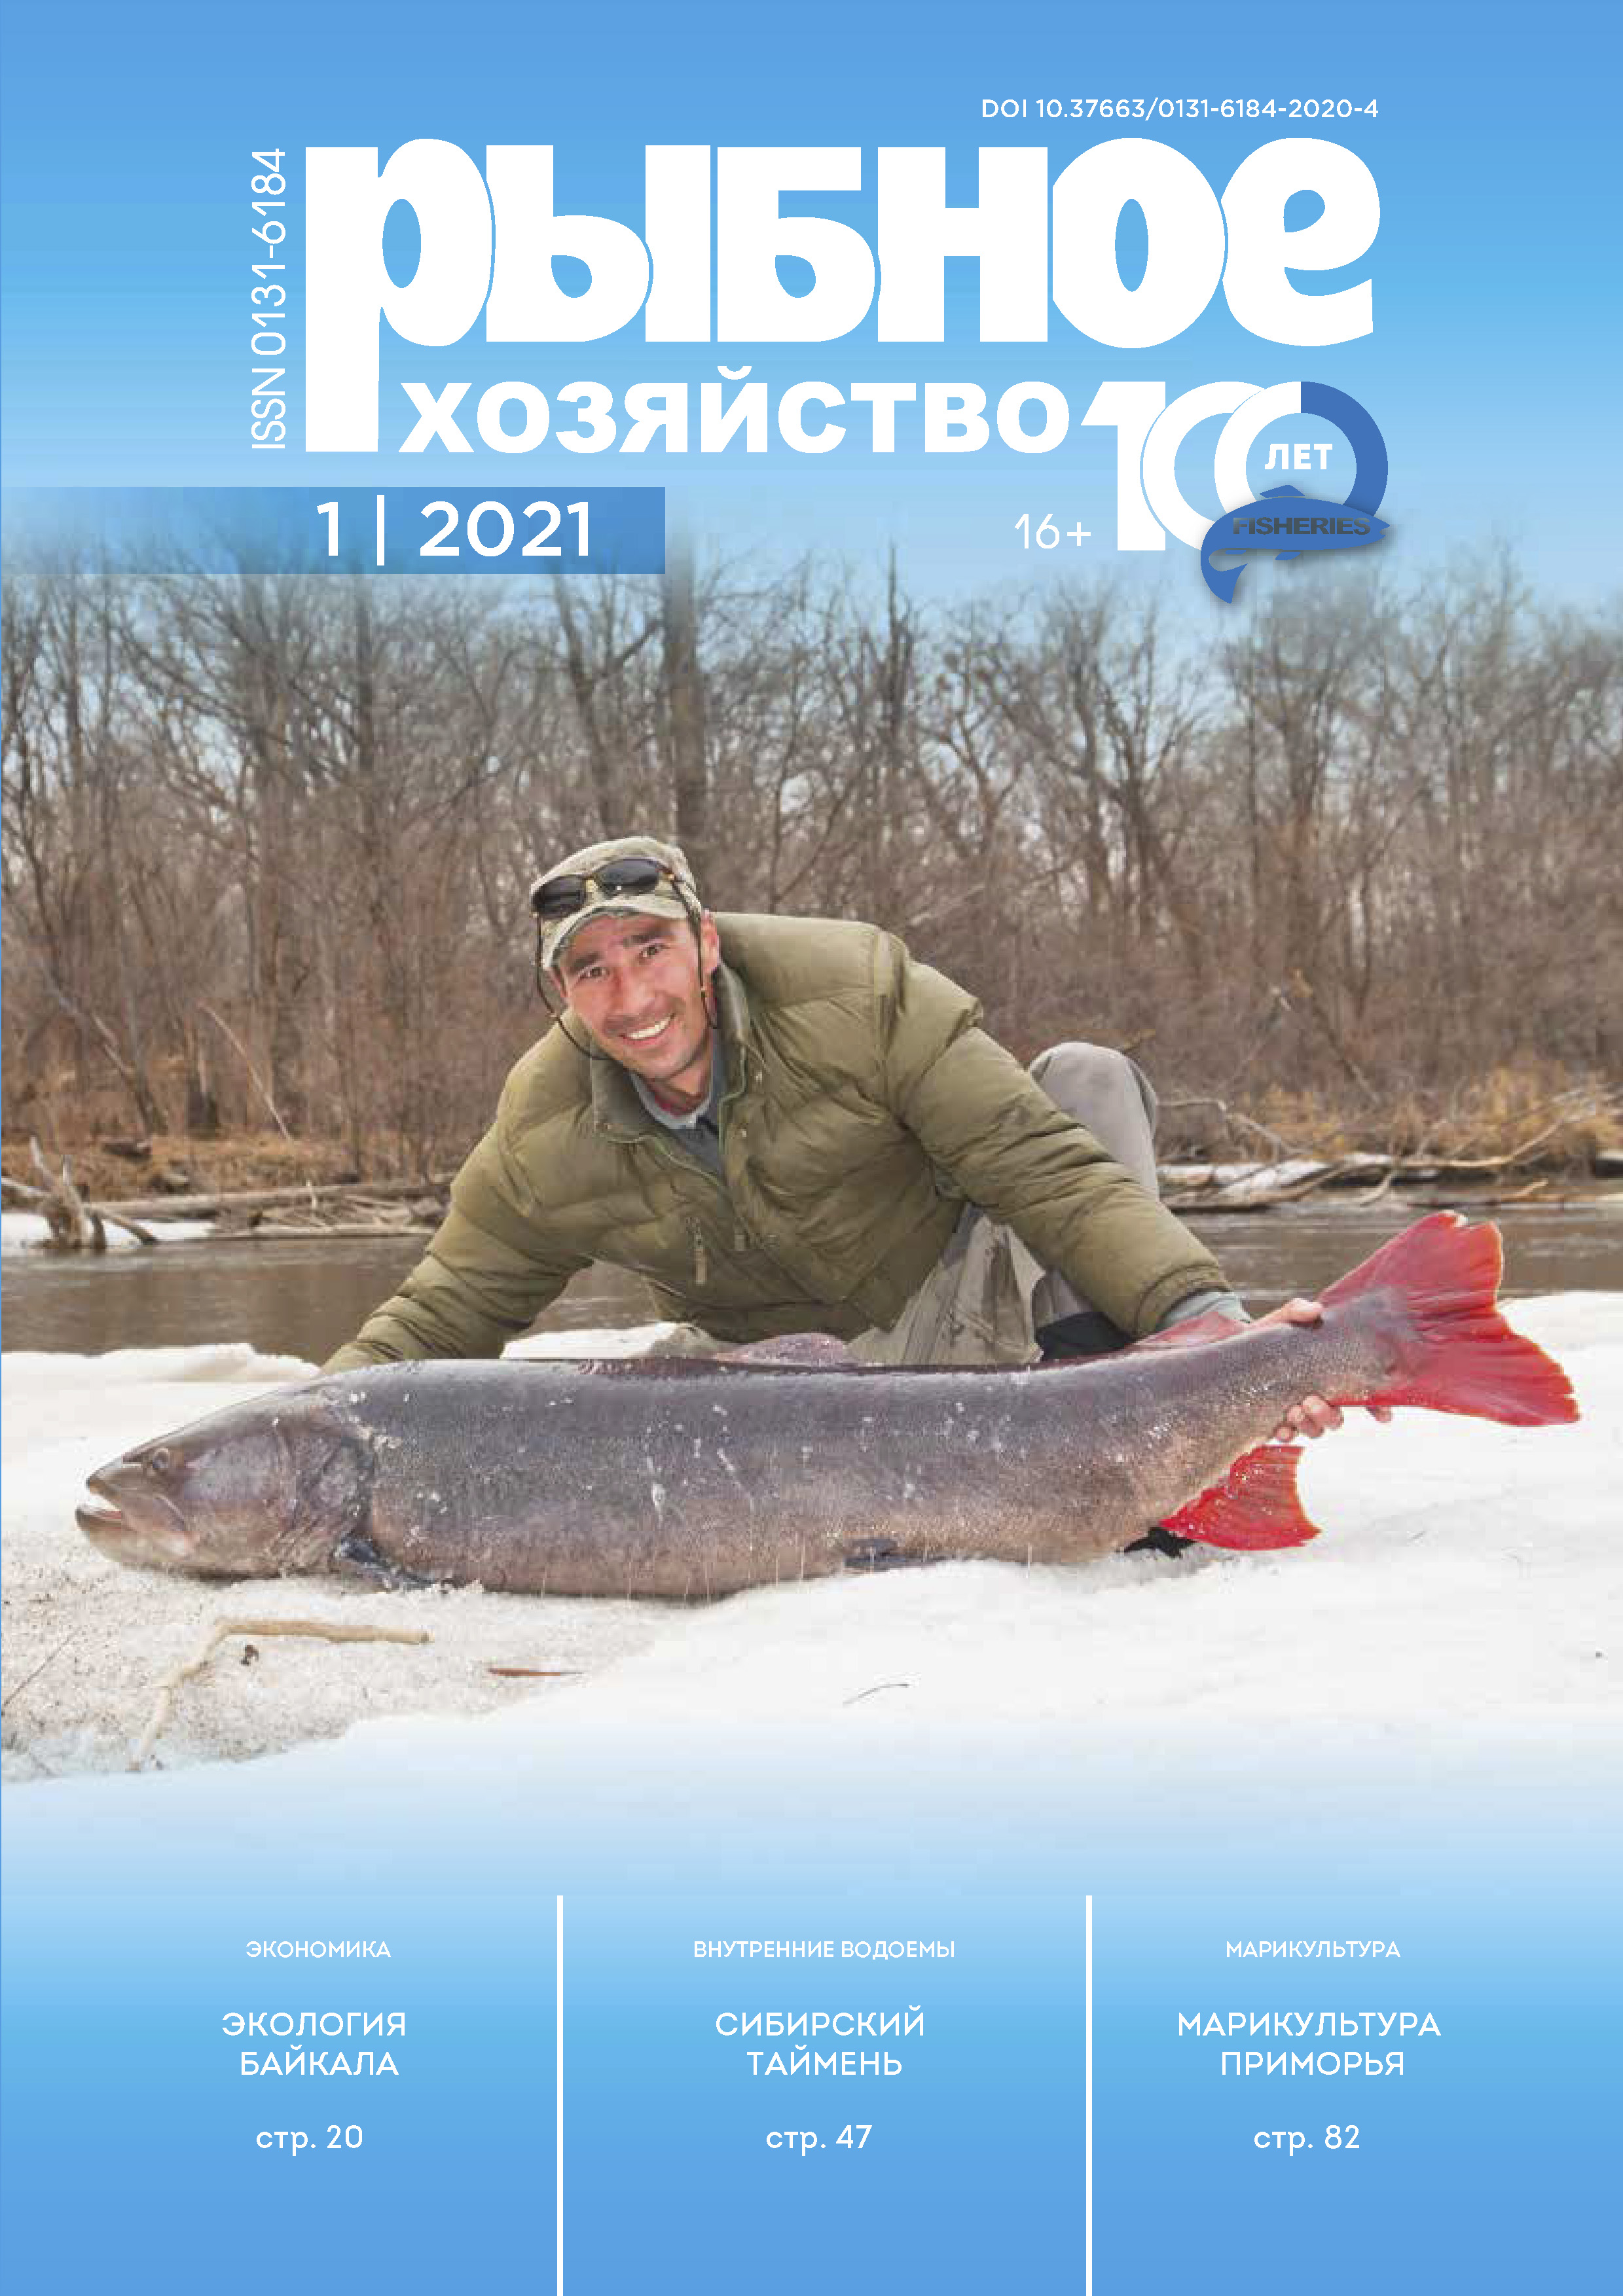             Эколого-правовые и экономические особенности развития Маломорского рыбопромыслового района Байкала
    